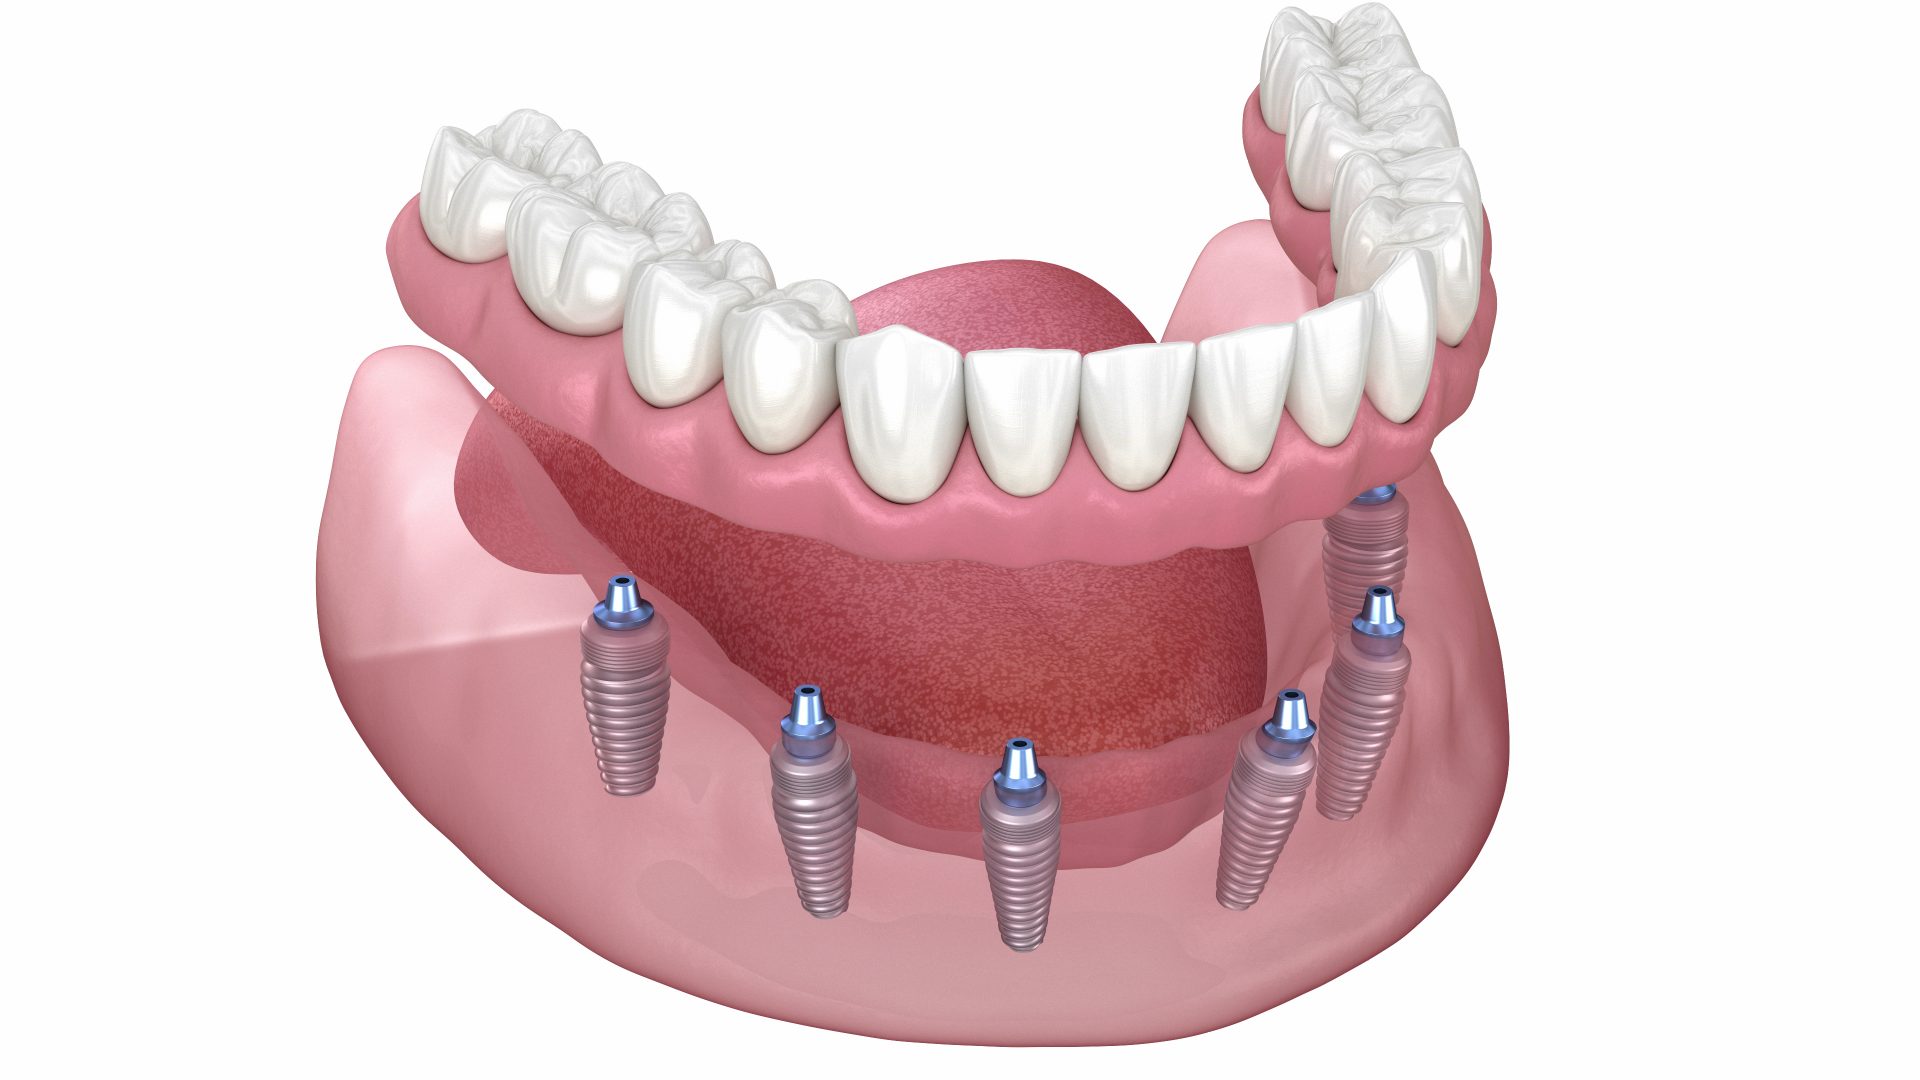 Uma linda prótese protocolo vista por cima sobre uma superfície espelhada, com o logotipo da clínica acessa odontologia